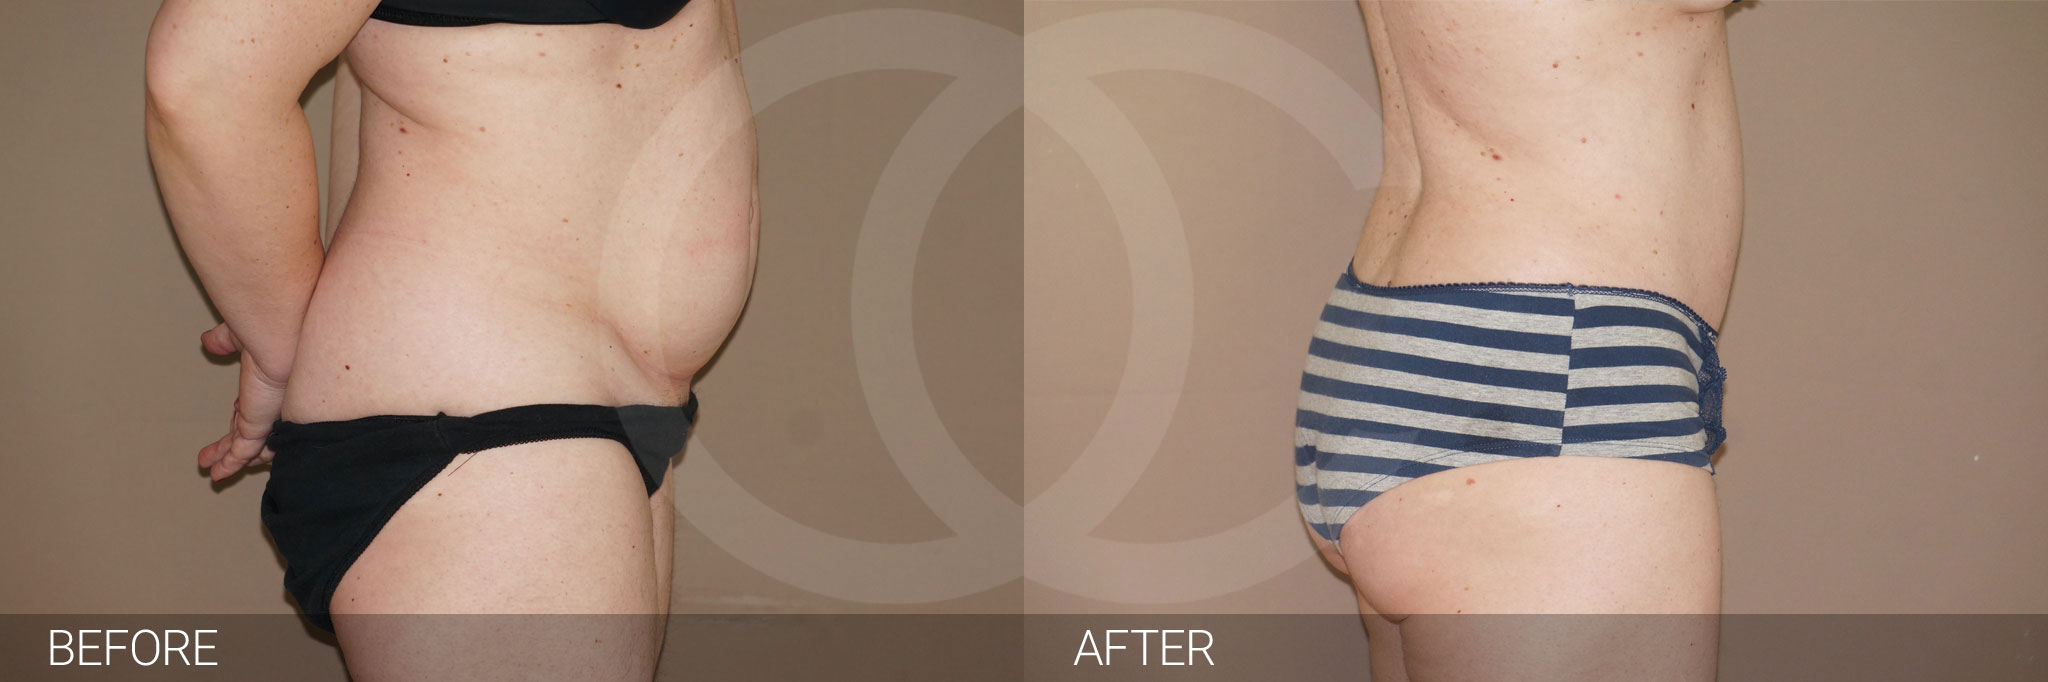 Antes y después Fotos de contorno abdominal fotos reales de pacientes 7.3 | Ocean Clinic Marbella Madrid